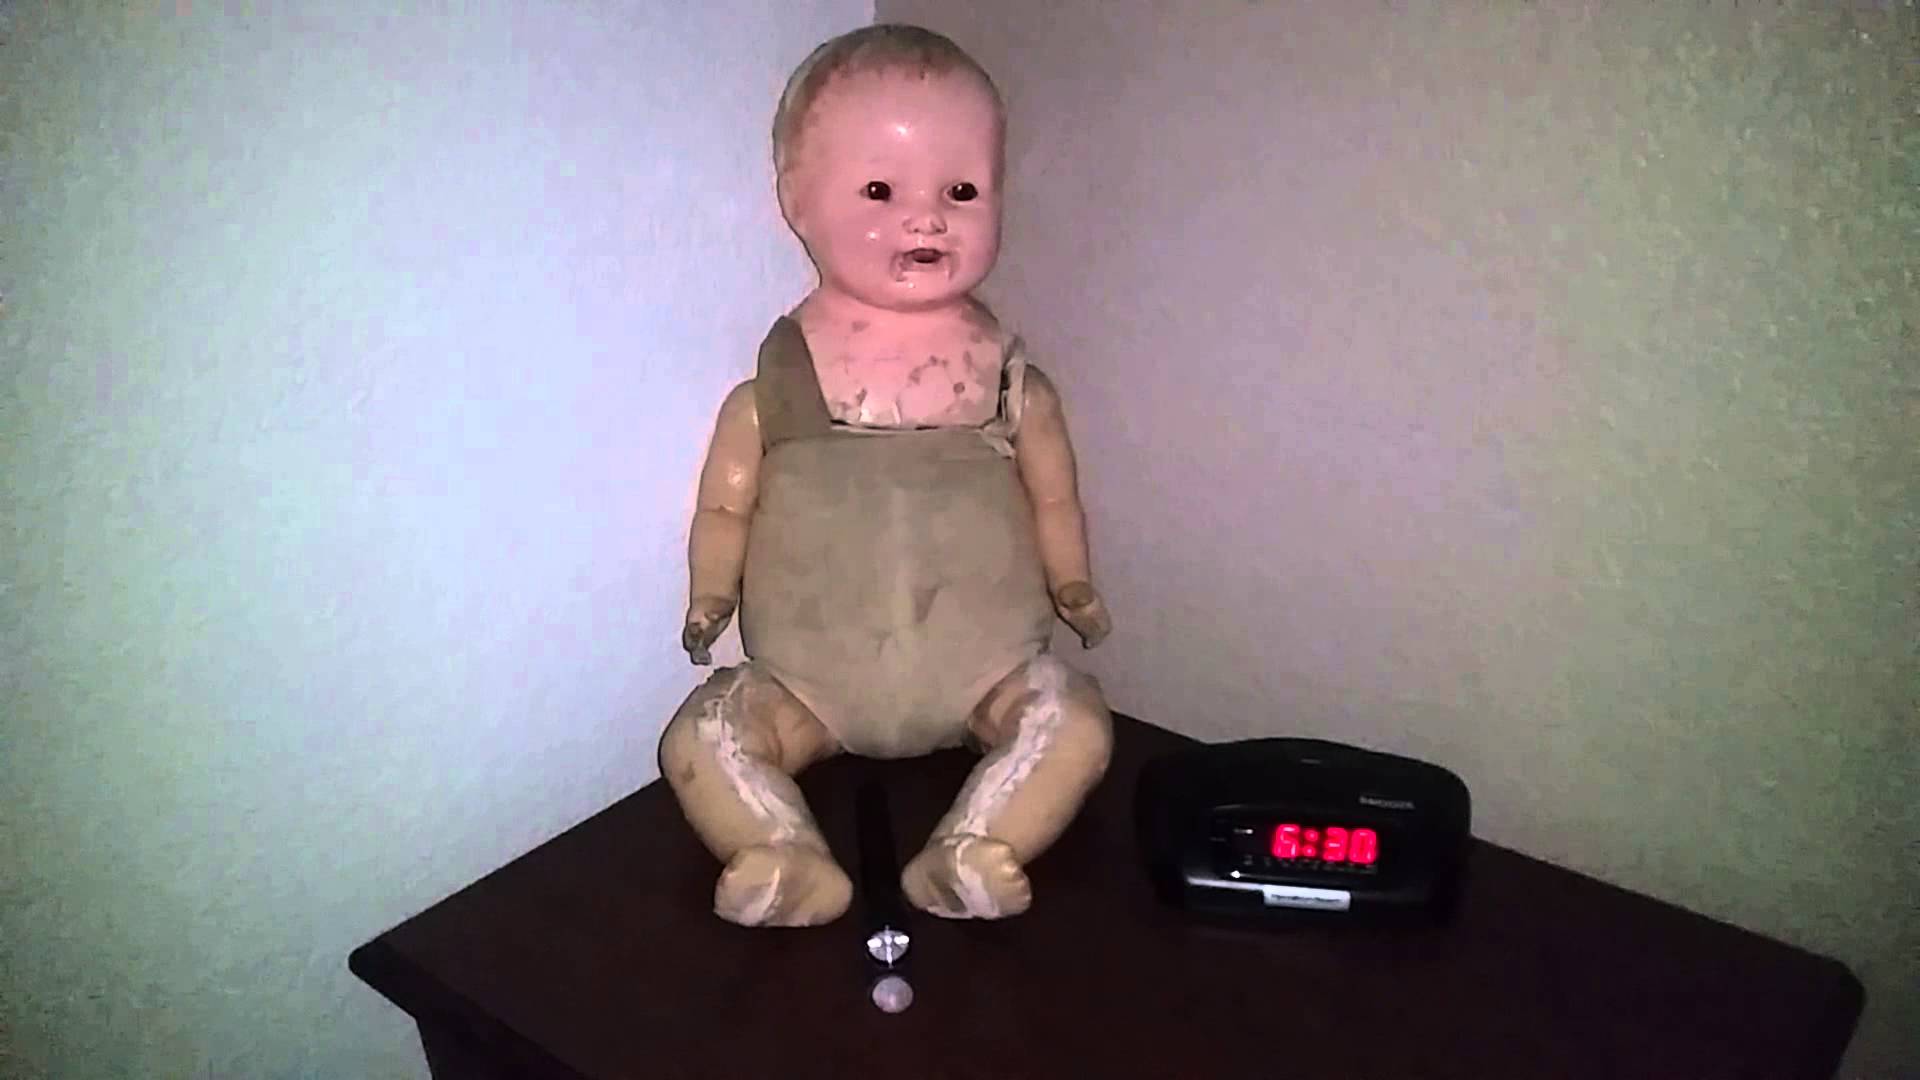 creepiest baby dolls